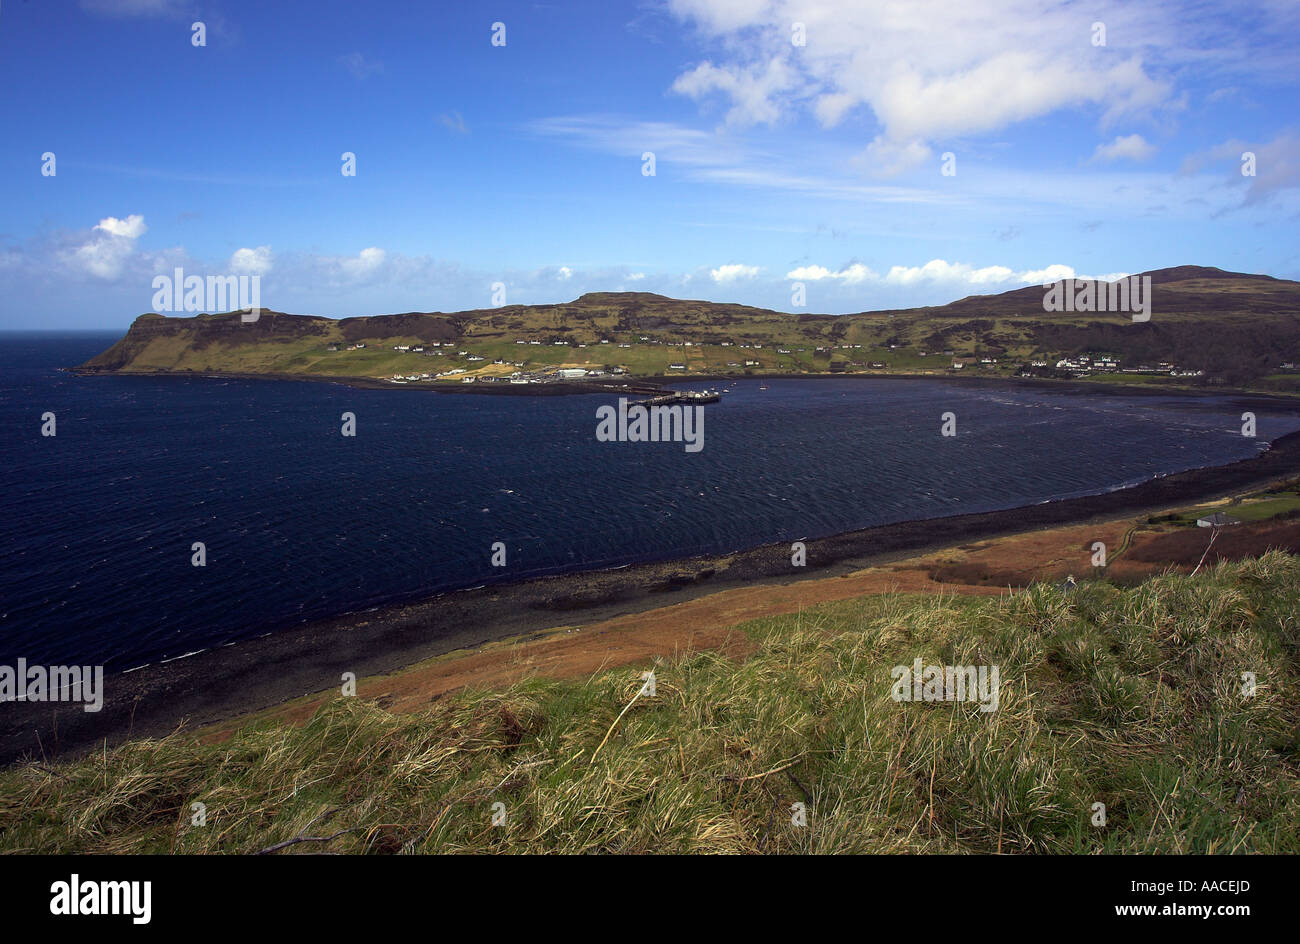 Le port côtier de l'UIG dans la baie de Uig, les highlands écossais, Isle of Skye, Scotland UK 2006 Banque D'Images